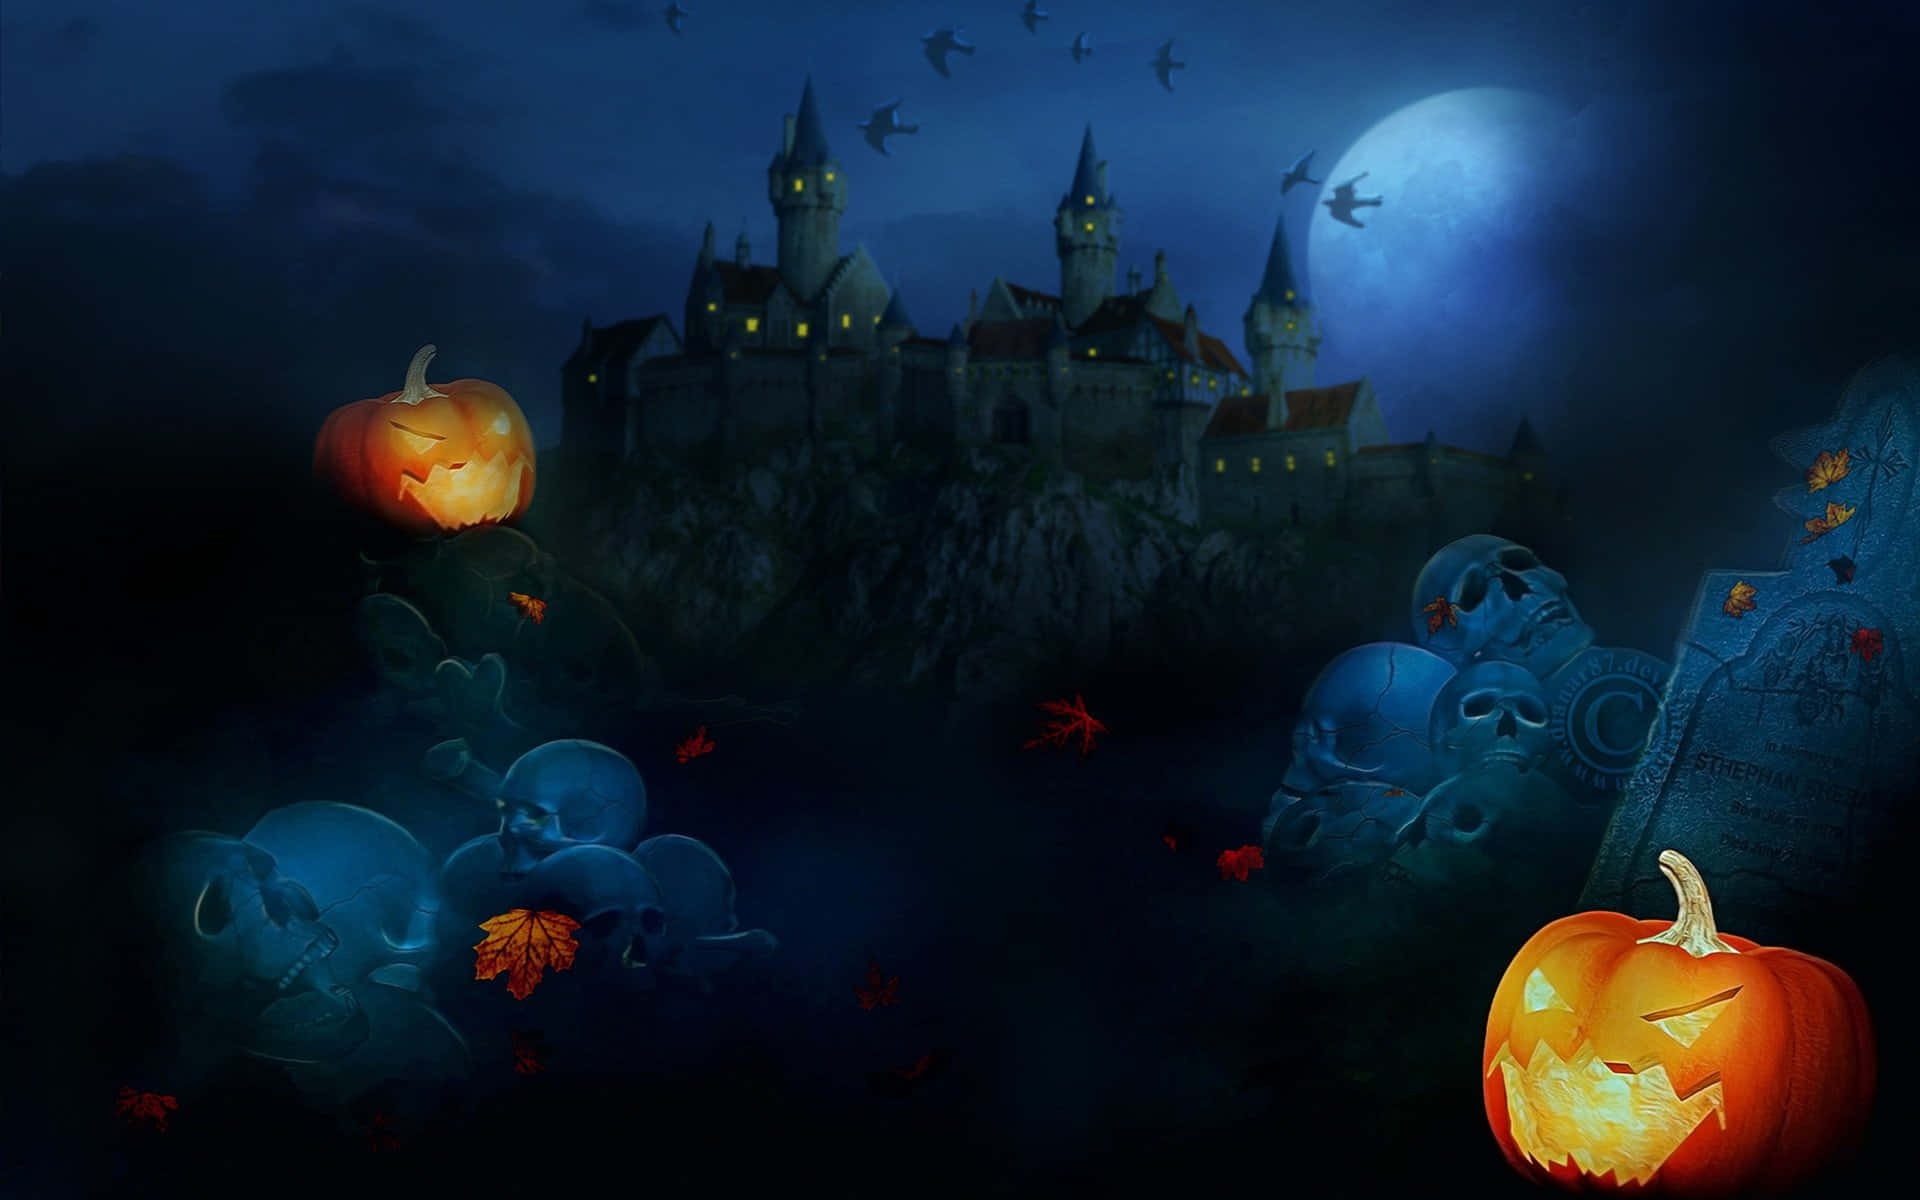 Preparatiper Una Notte Spaventosa E Misteriosa Di Halloween!